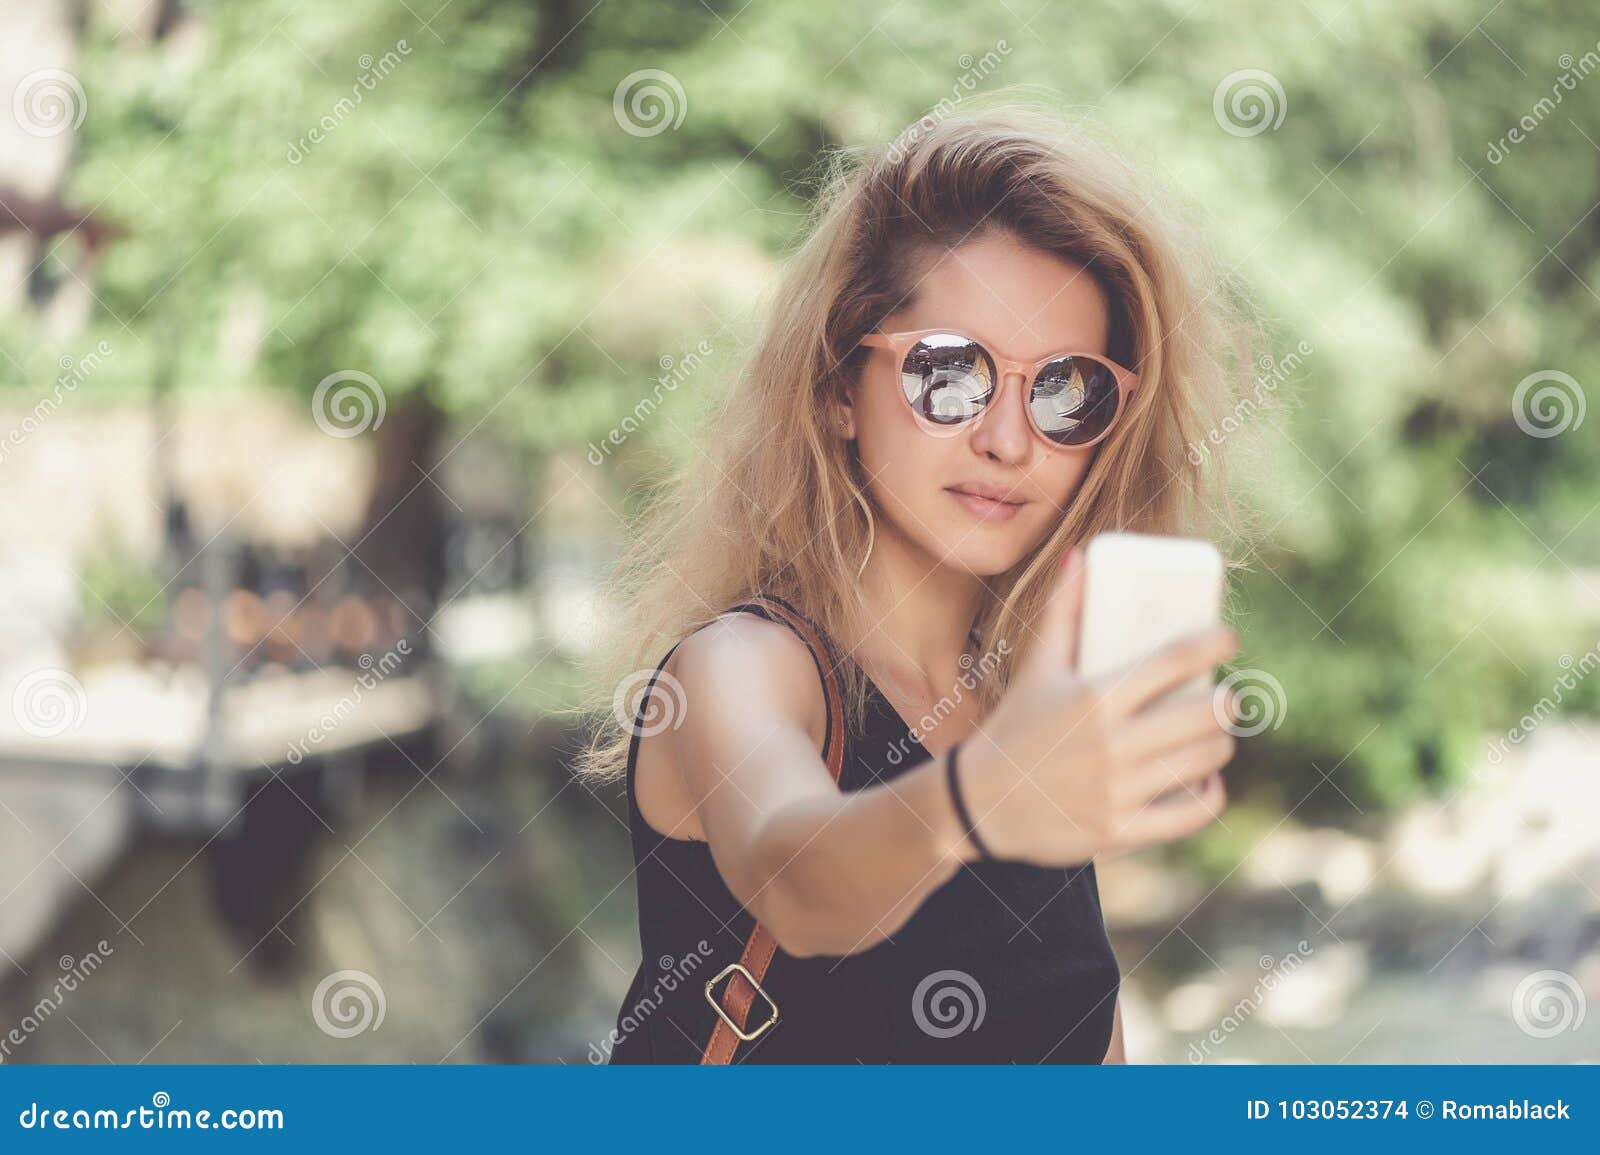 Blonde Selfie with Hair - wide 10